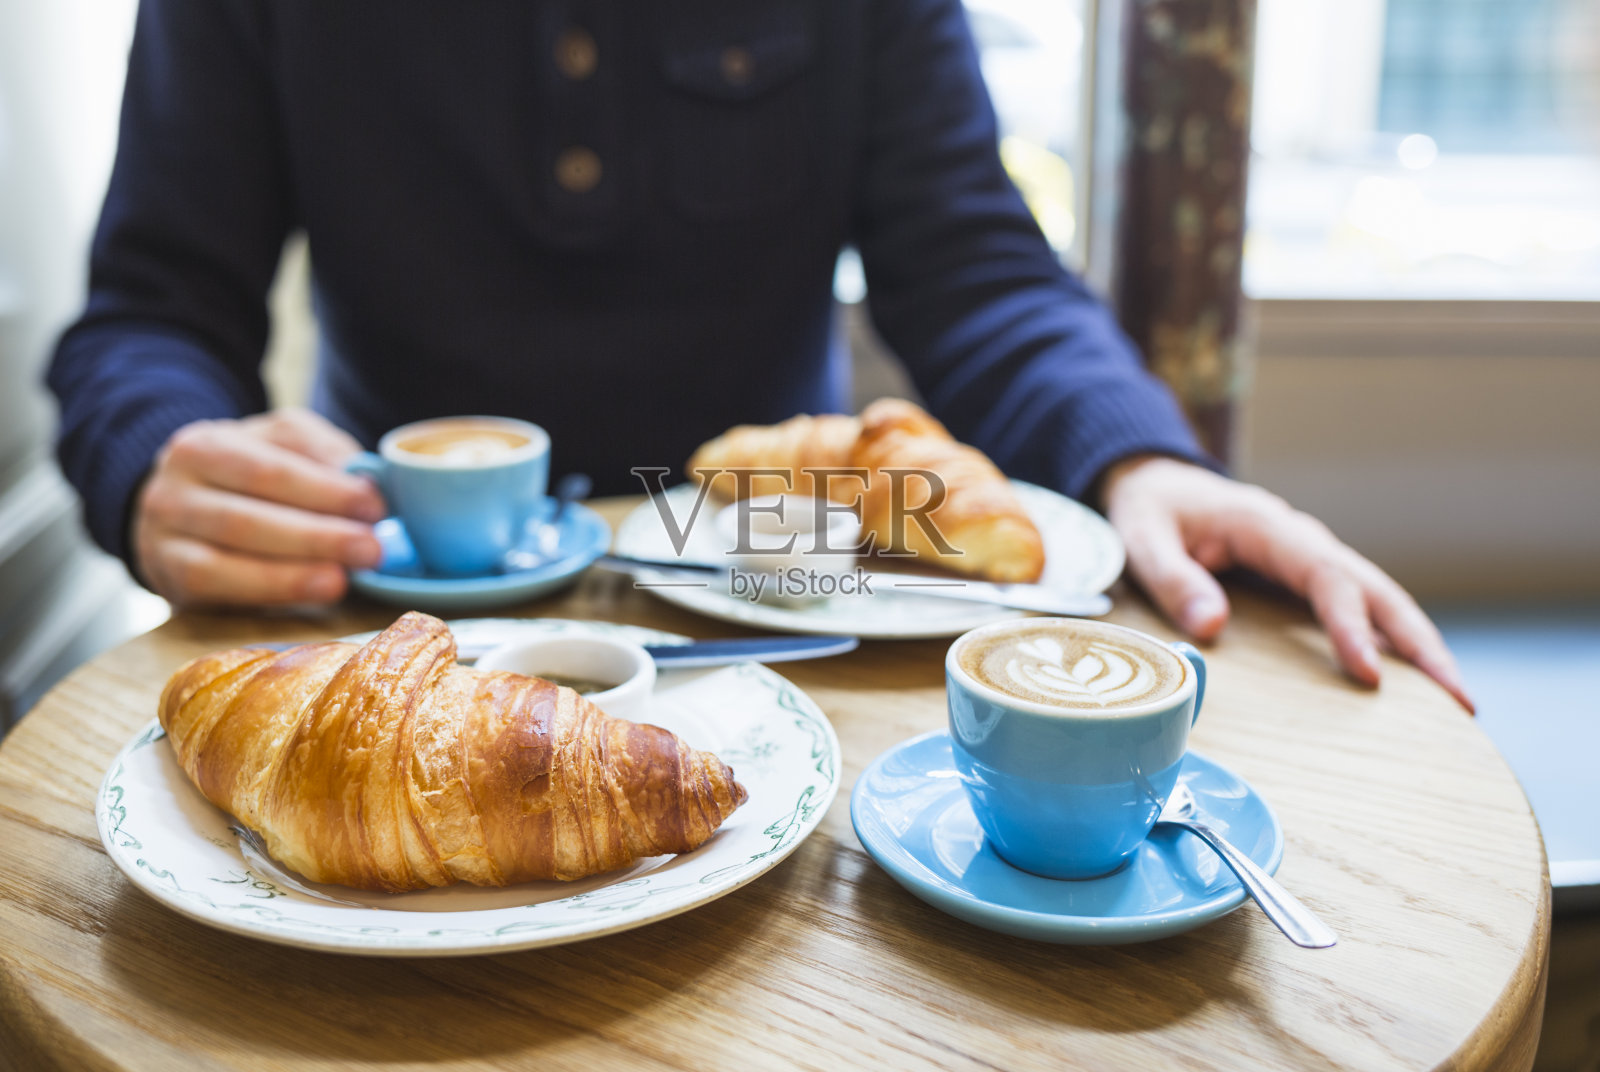 咖啡和羊角面包。法式双人早餐(法国巴黎)照片摄影图片